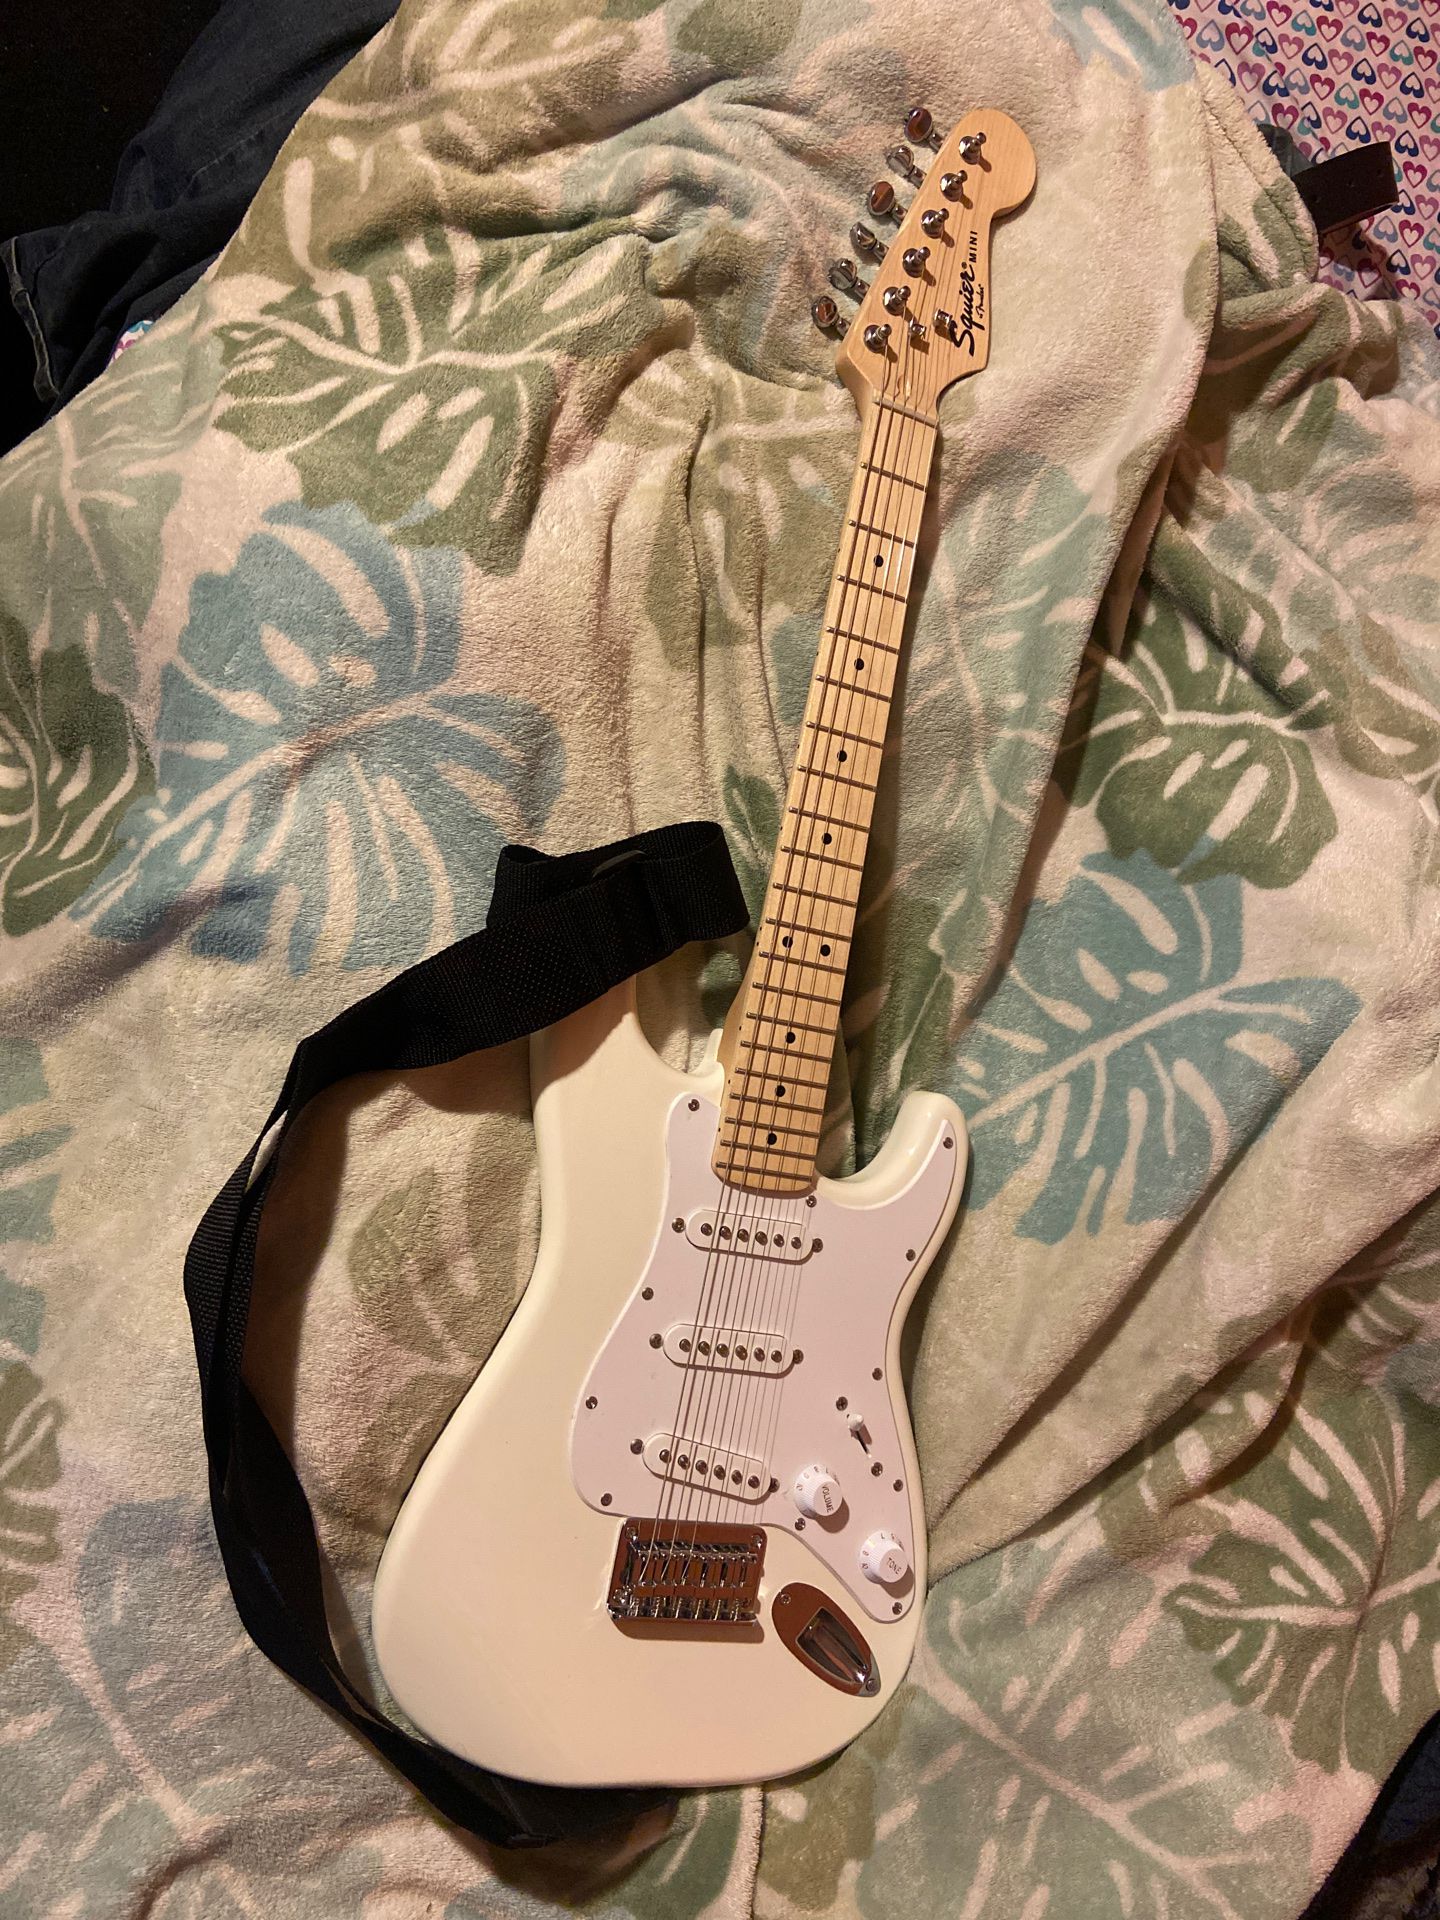 Fender squire mini guitar